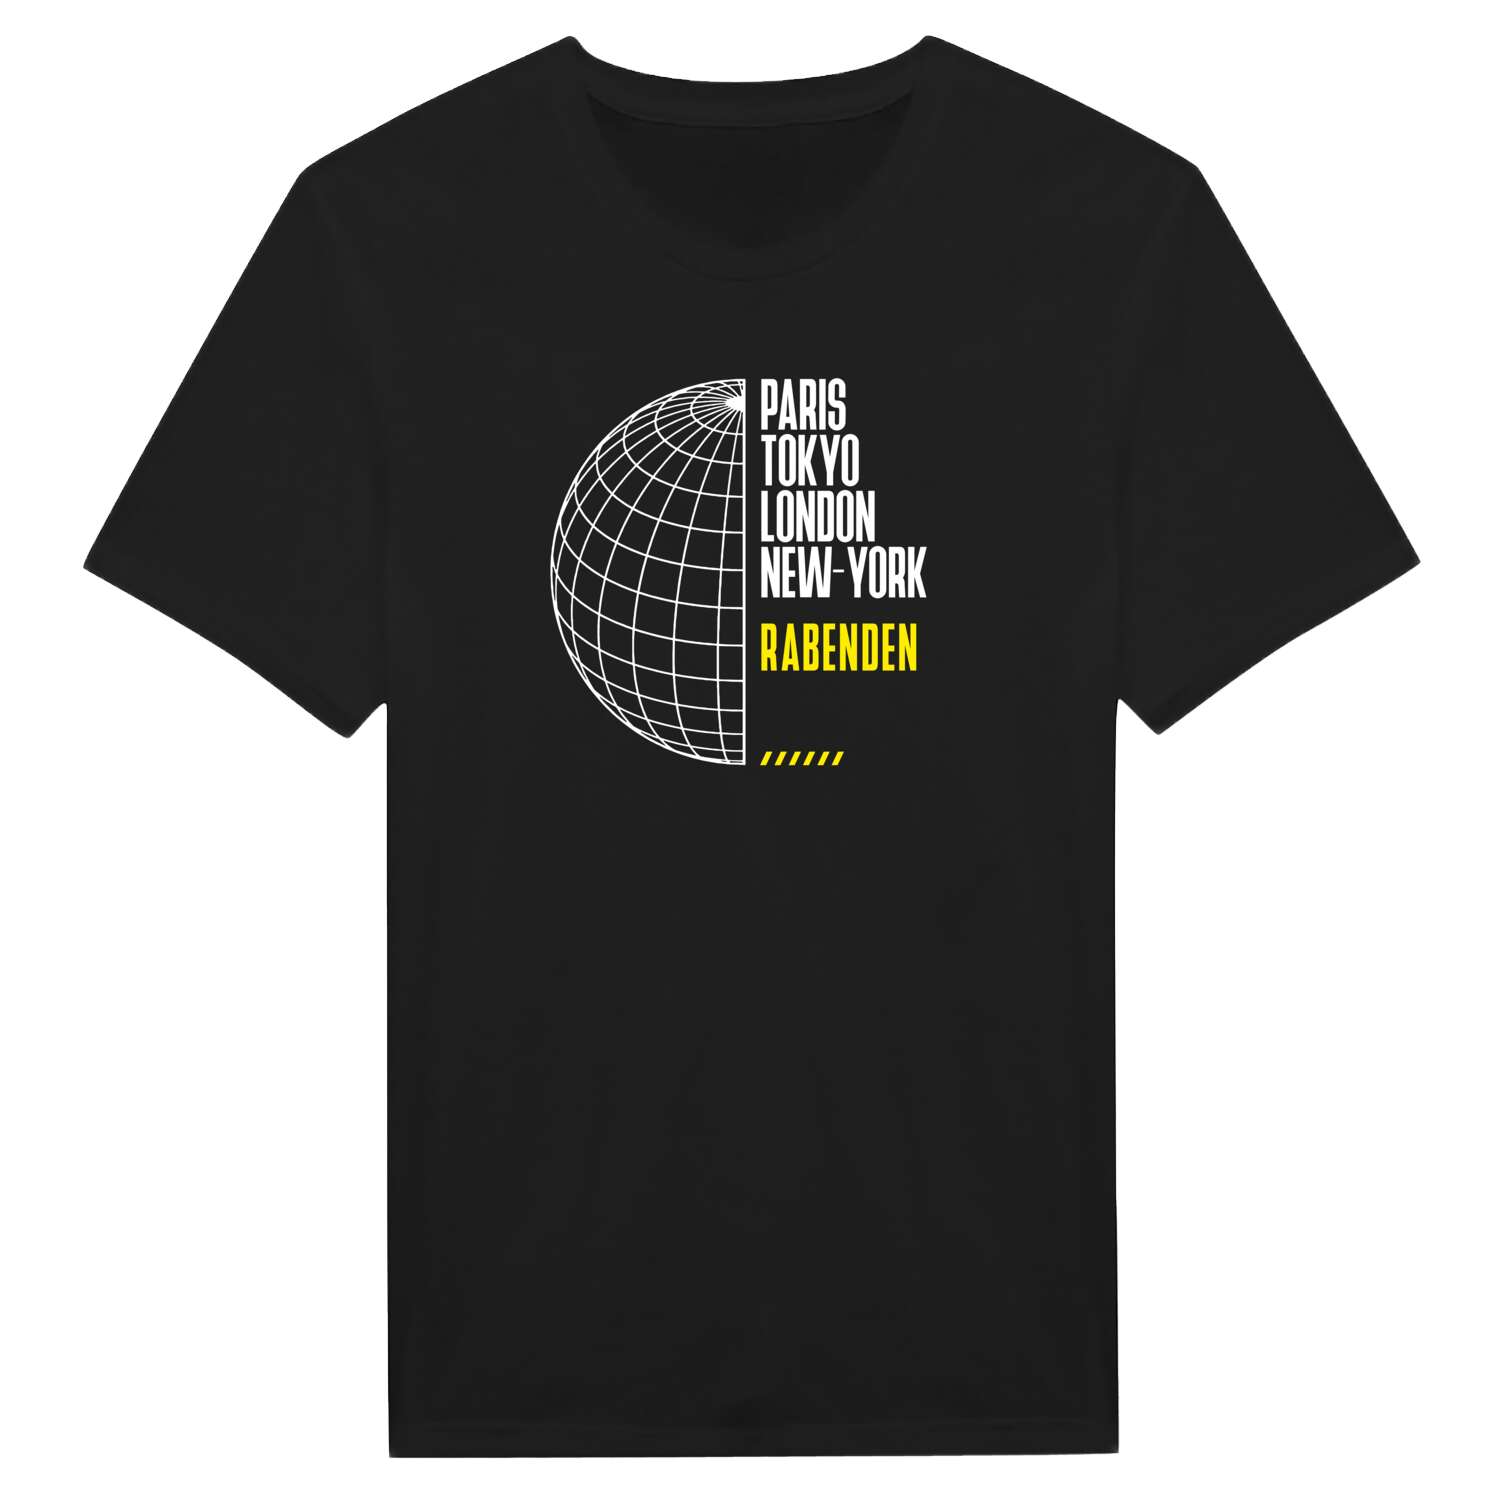 Rabenden T-Shirt »Paris Tokyo London«